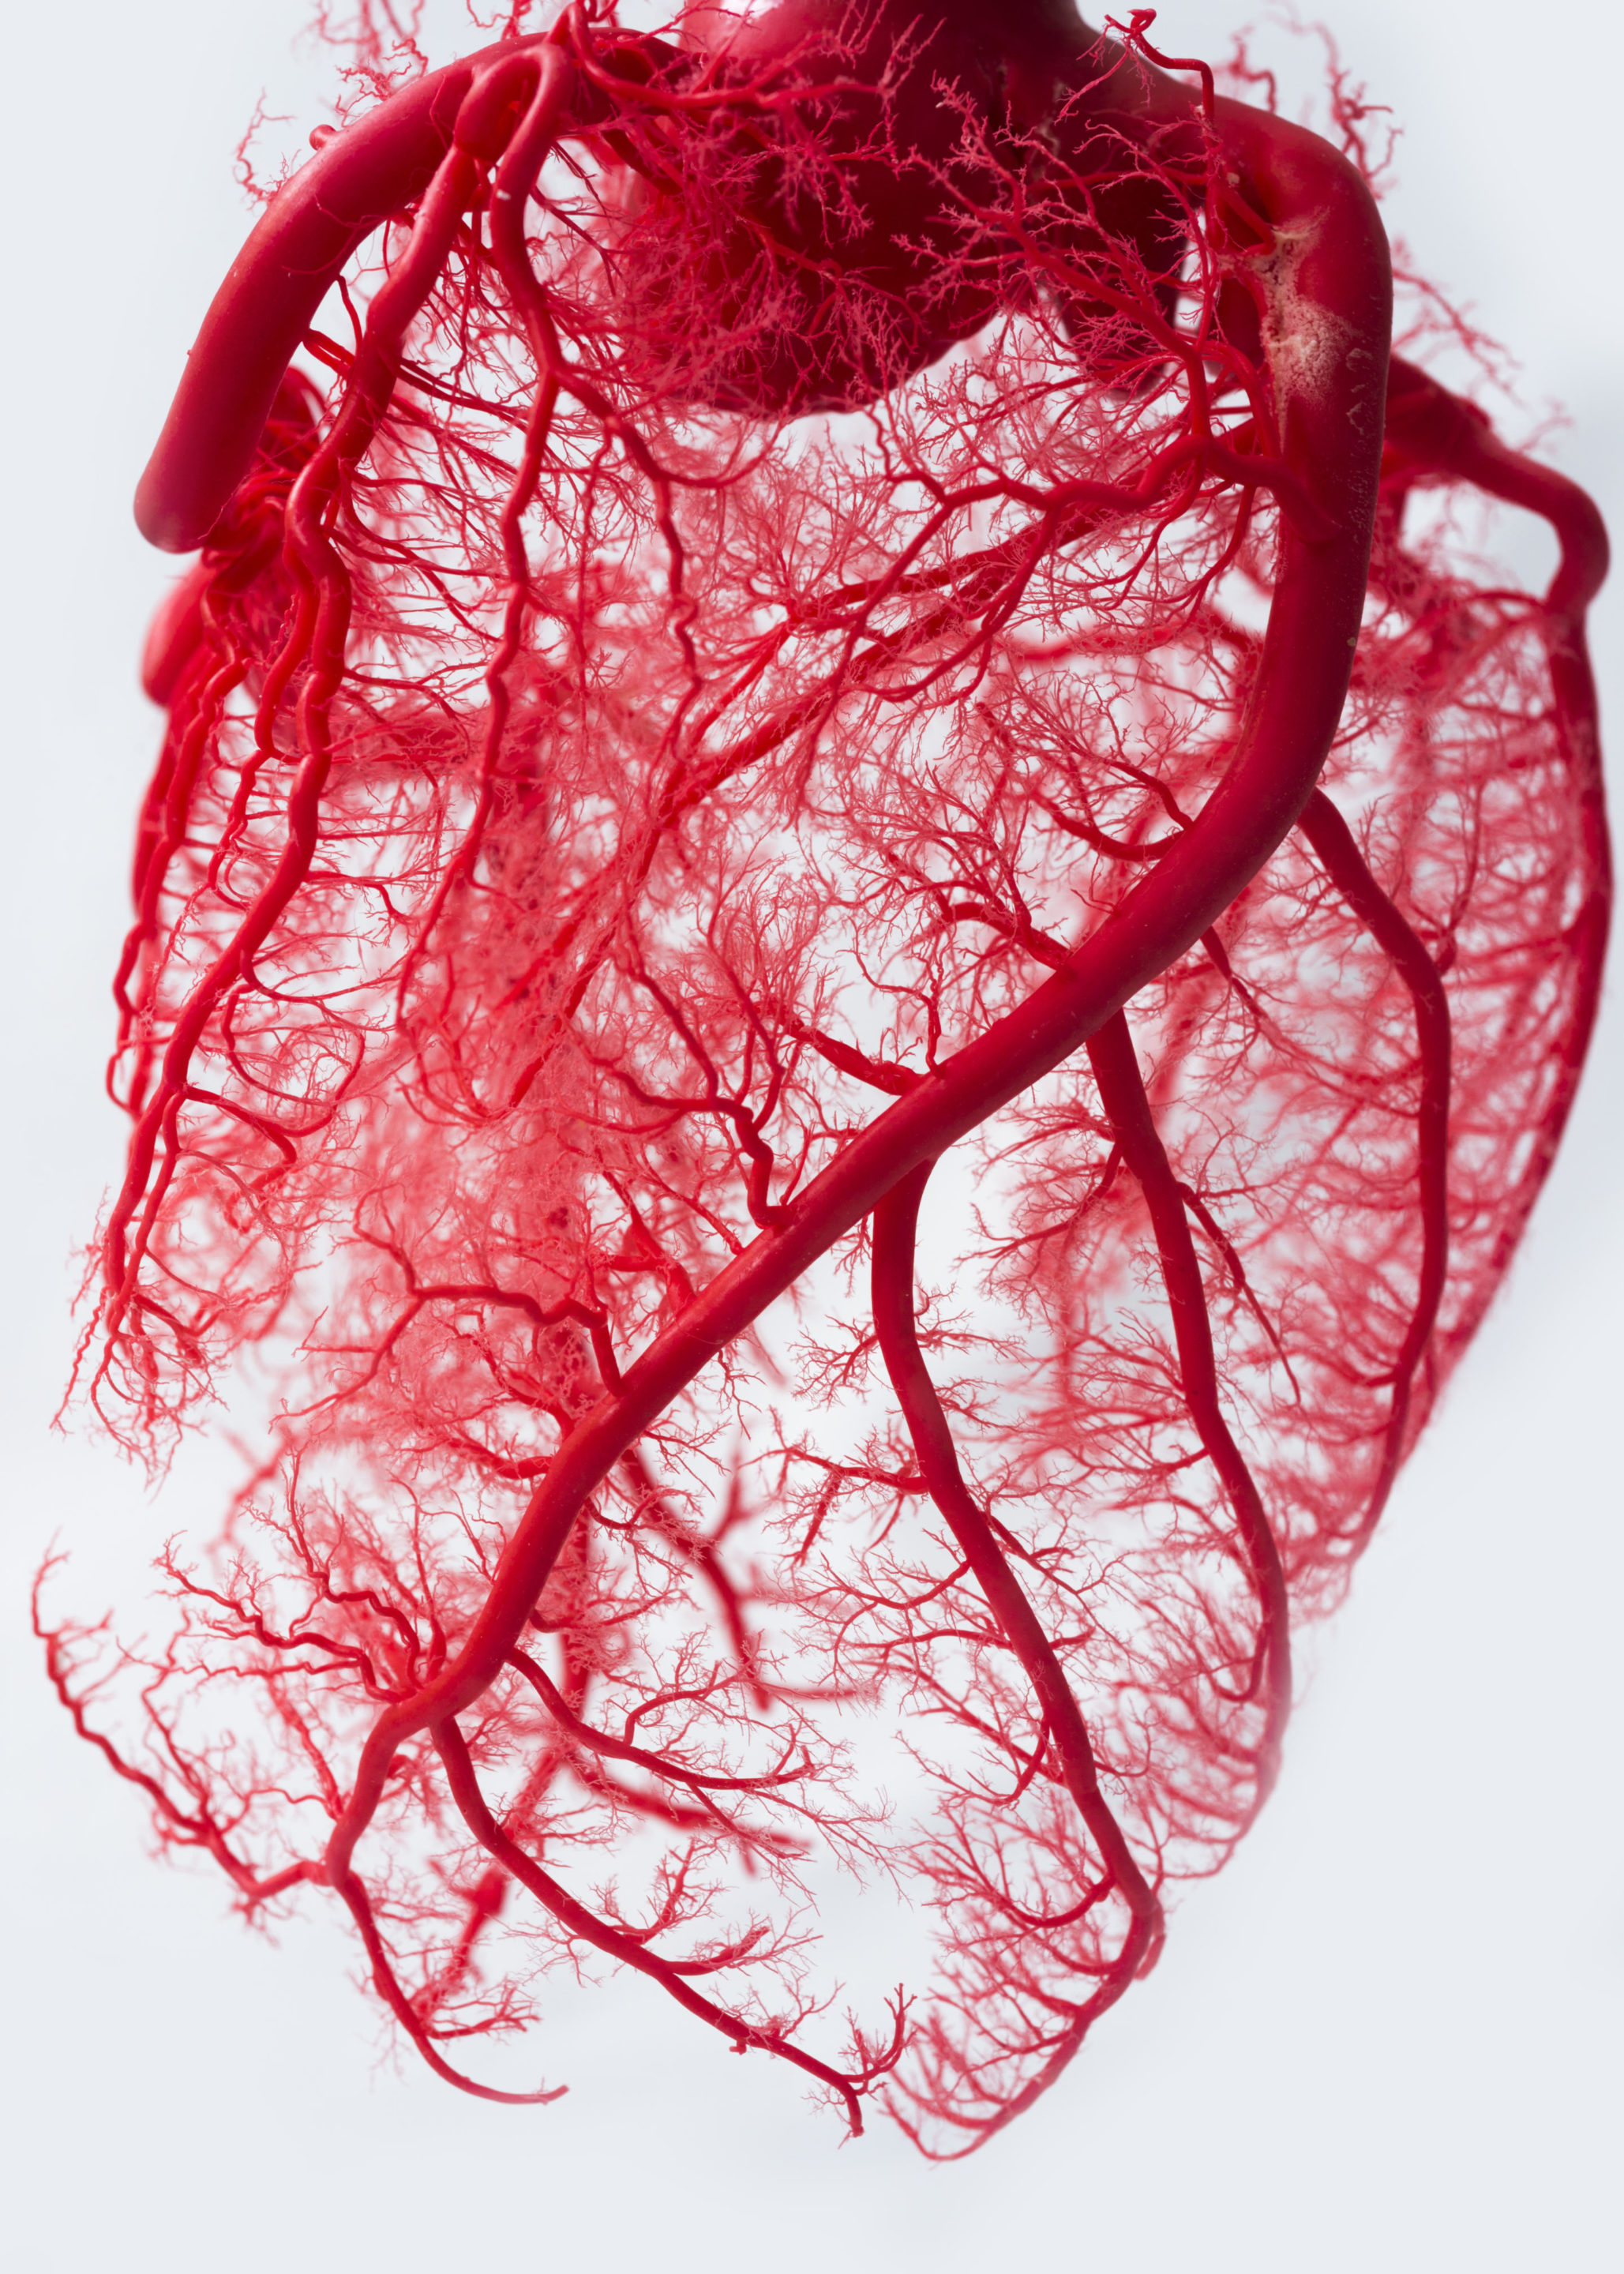 heart vessels